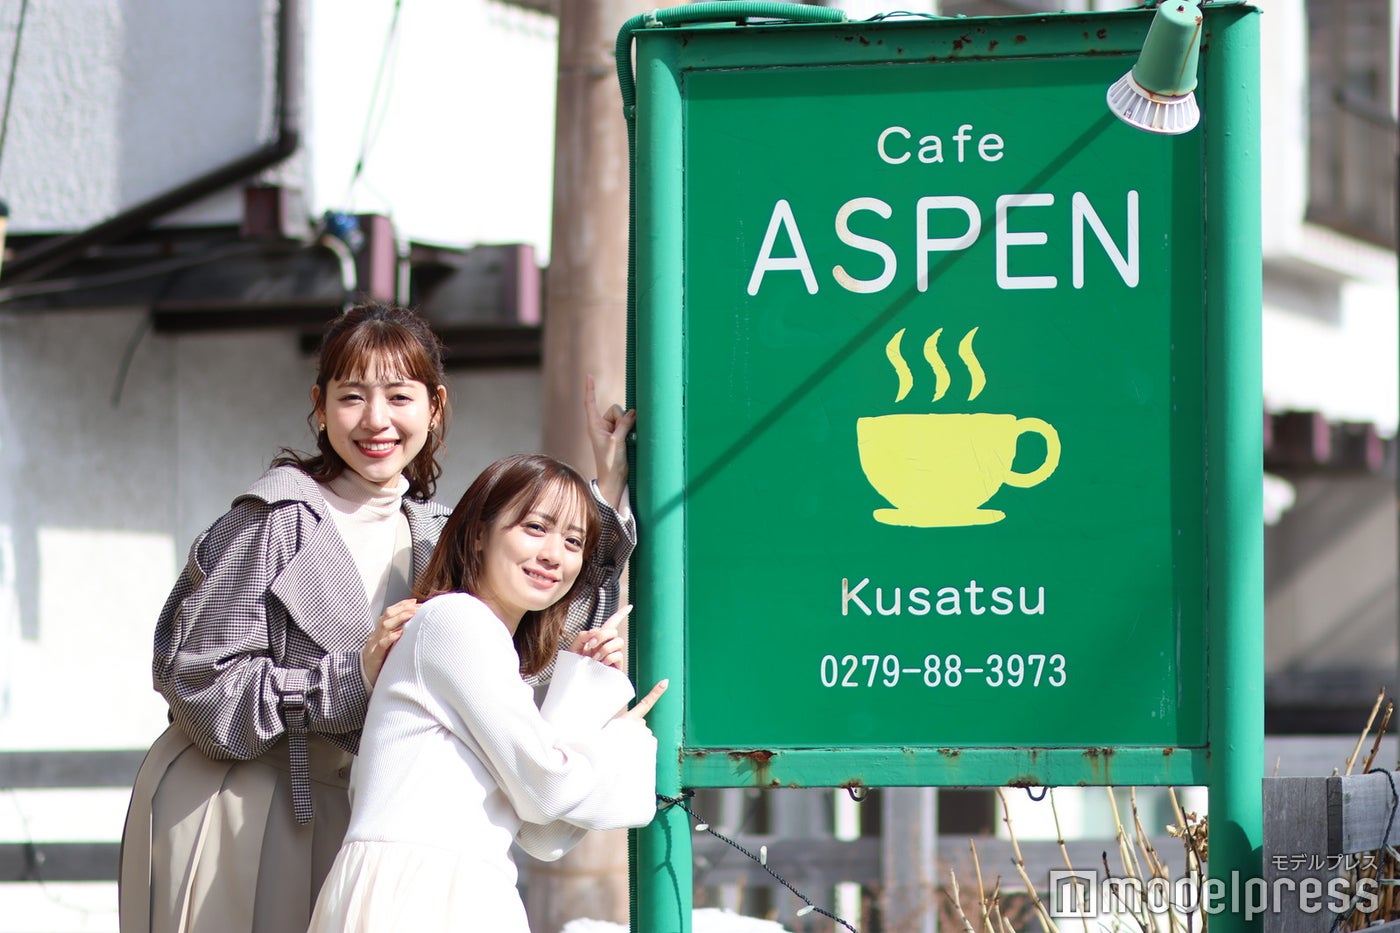 かわいくて大きな緑の看板が目印の「Cafe ASPEN」 （C）モデルプレス